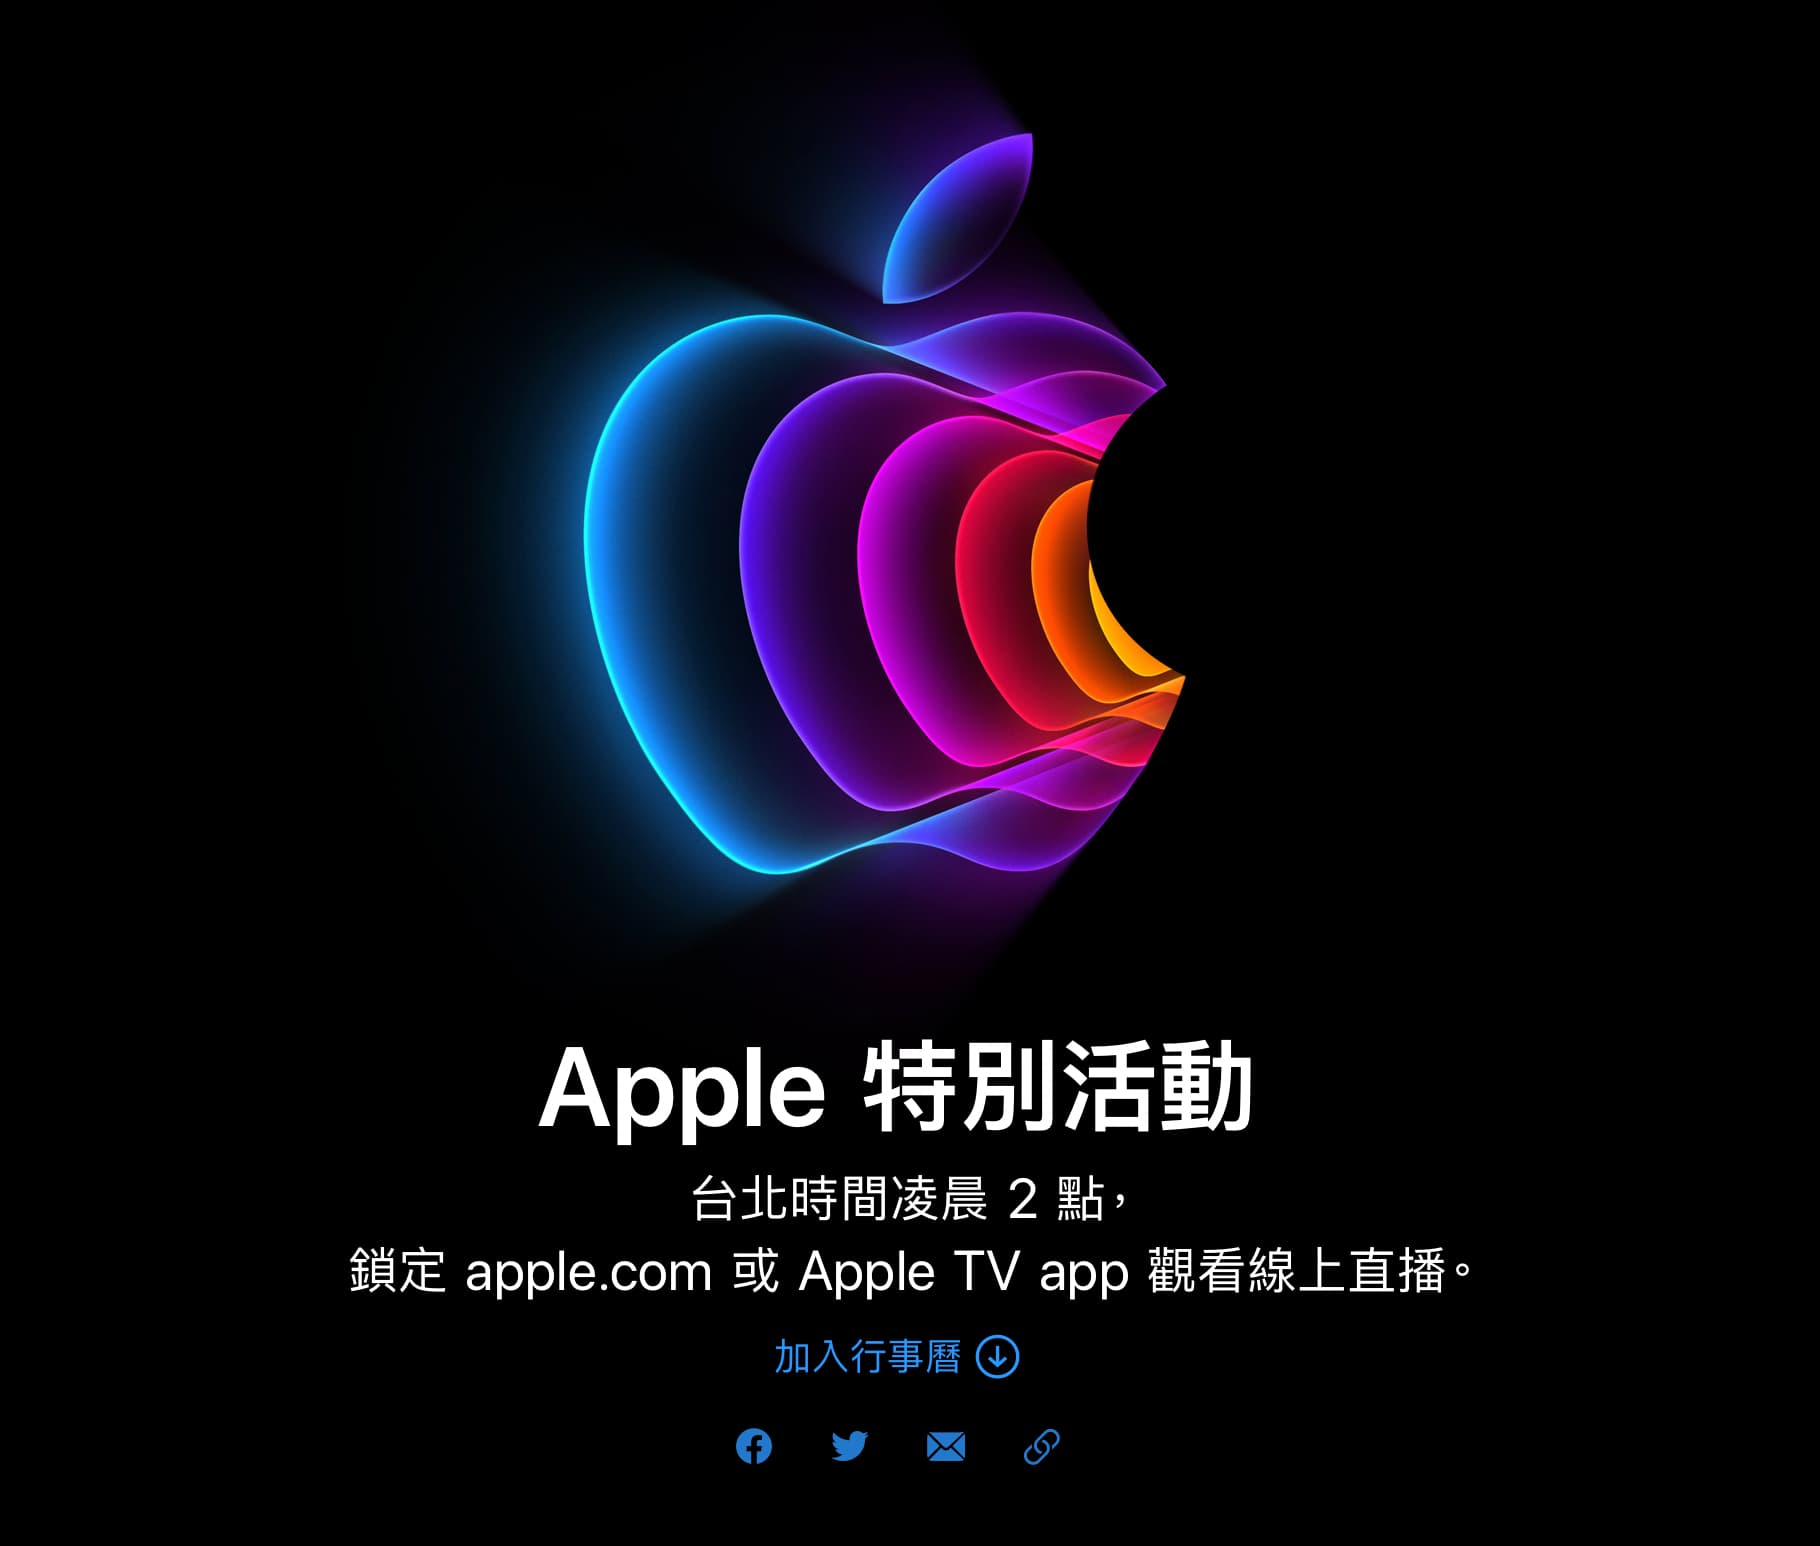 2022 蘋果春季發表會 Apple Events 懶人包 – iPhone SE 3、iPad Air 5 規格有望再升級